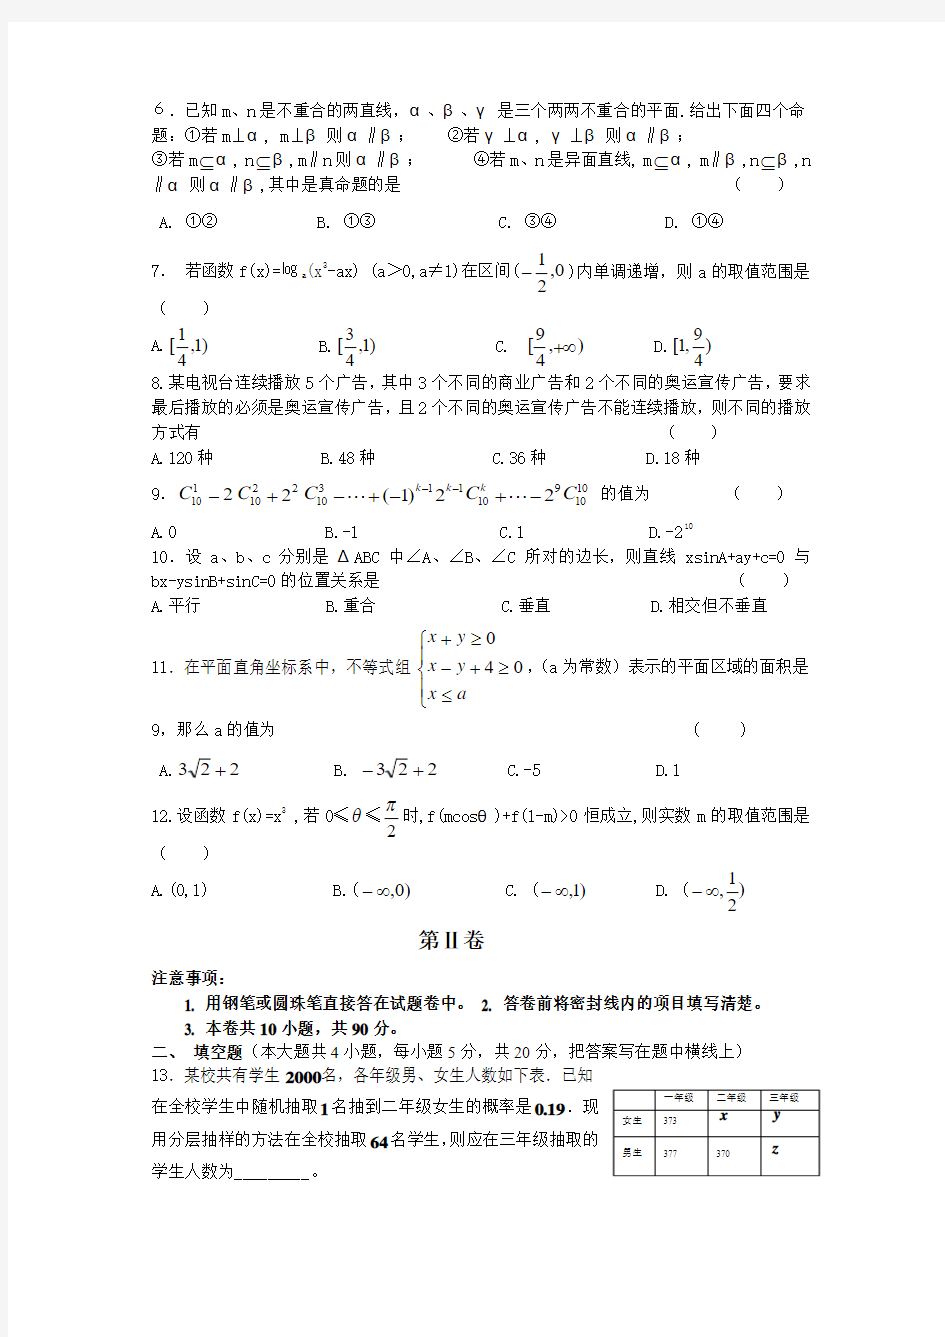 河北省唐山一中2010年高考模拟试卷(一)数学理